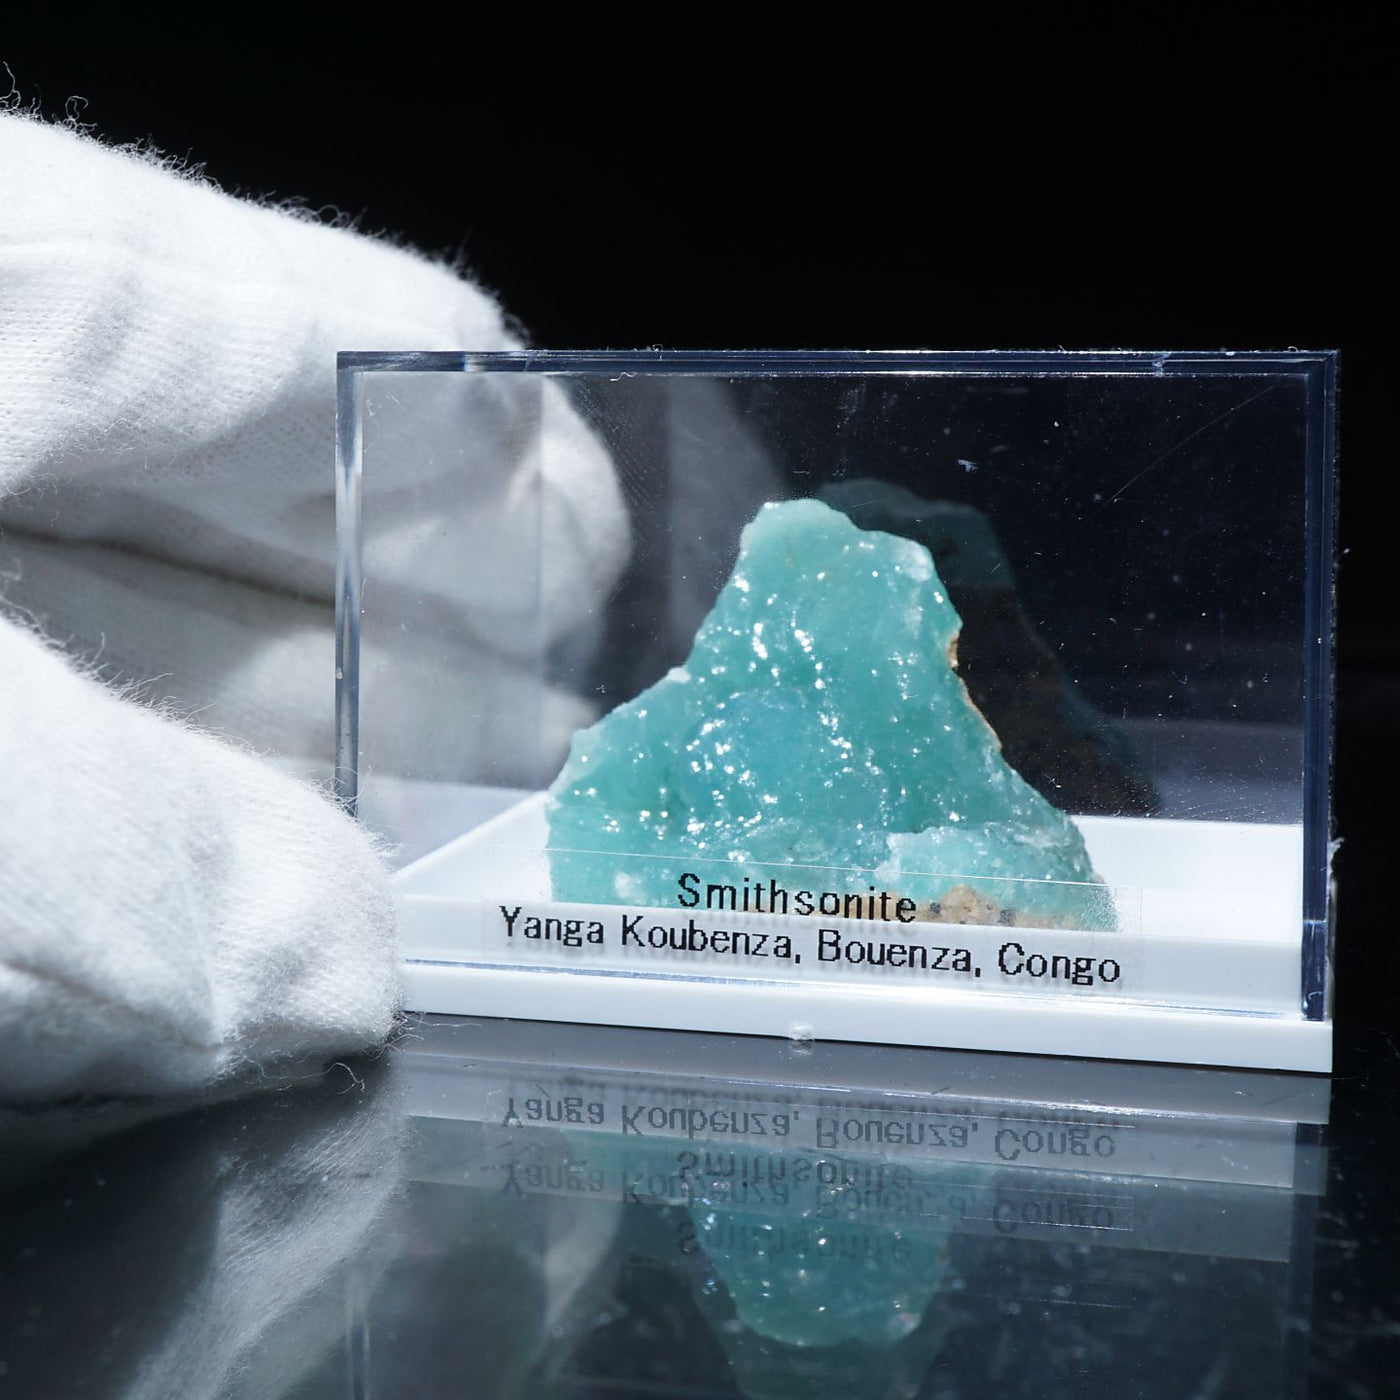 コンゴ産 スミソナイト(菱亜鉛鉱) – 天然石ハッピーギフト